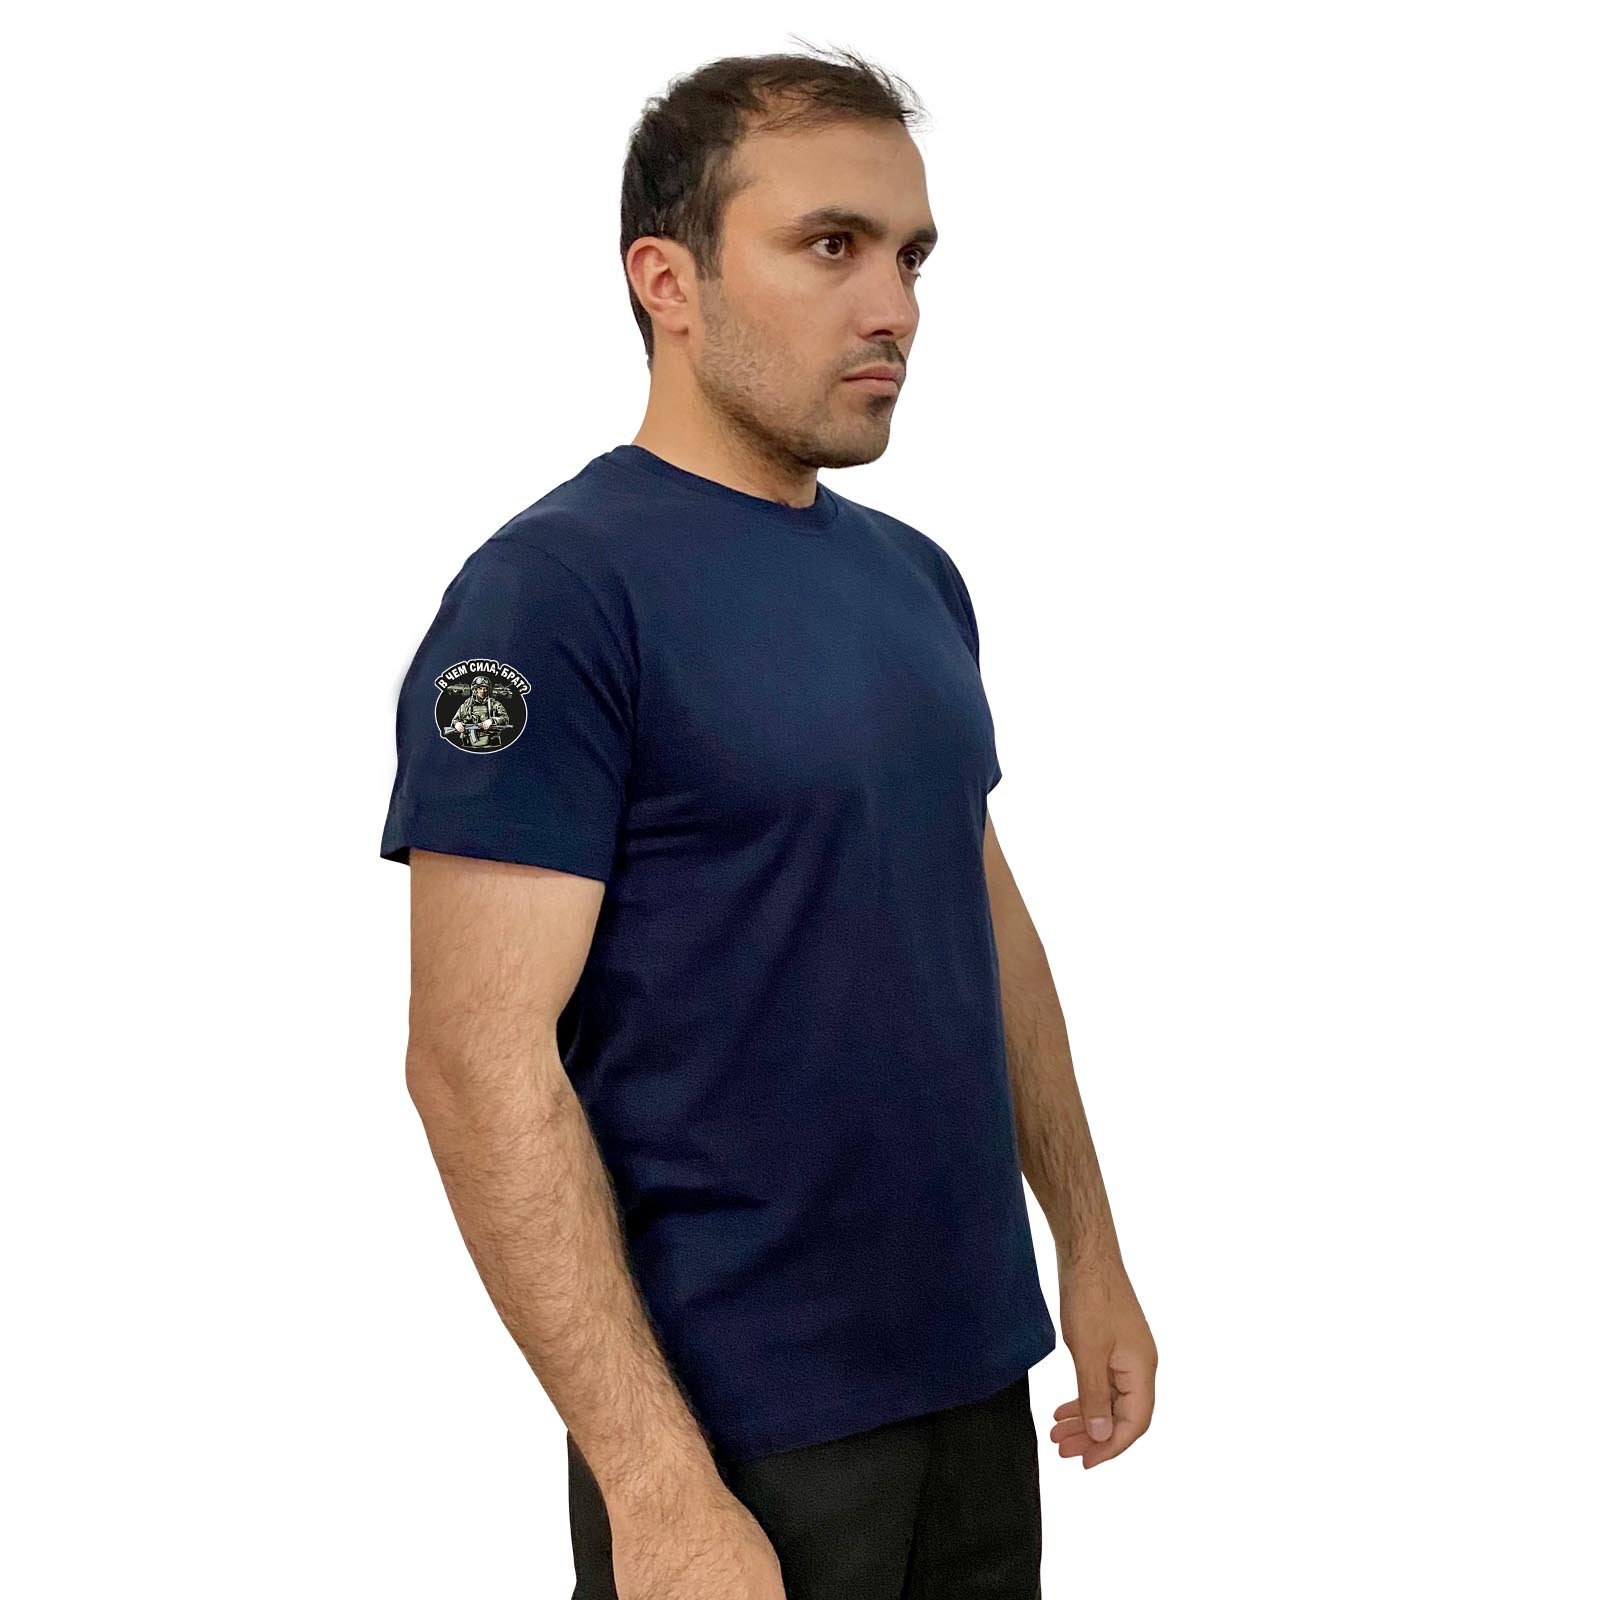 Тёмно-синяя футболка с трансфером "В чём сила, брат?" на рукаве